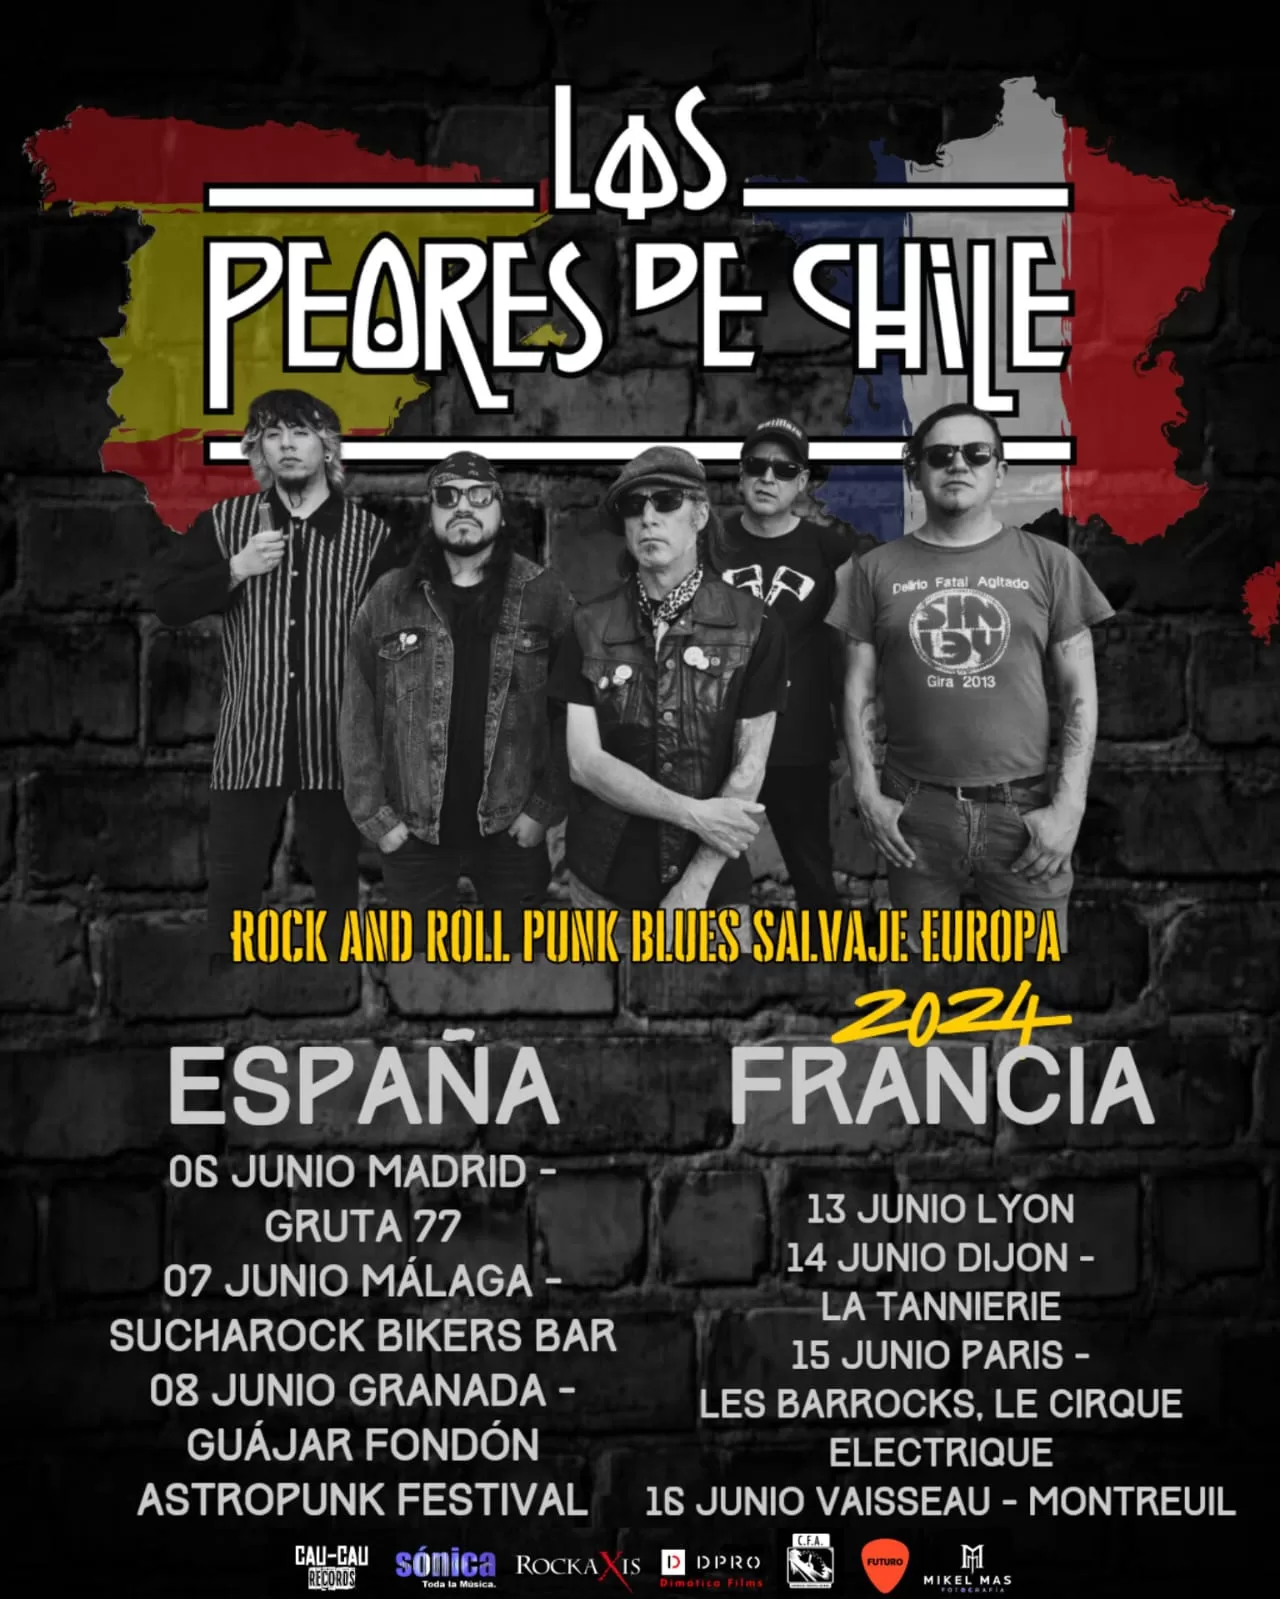 los peores de chile anuncian oficialmente gira europea llamada «rockanroll punk blues salvaje»